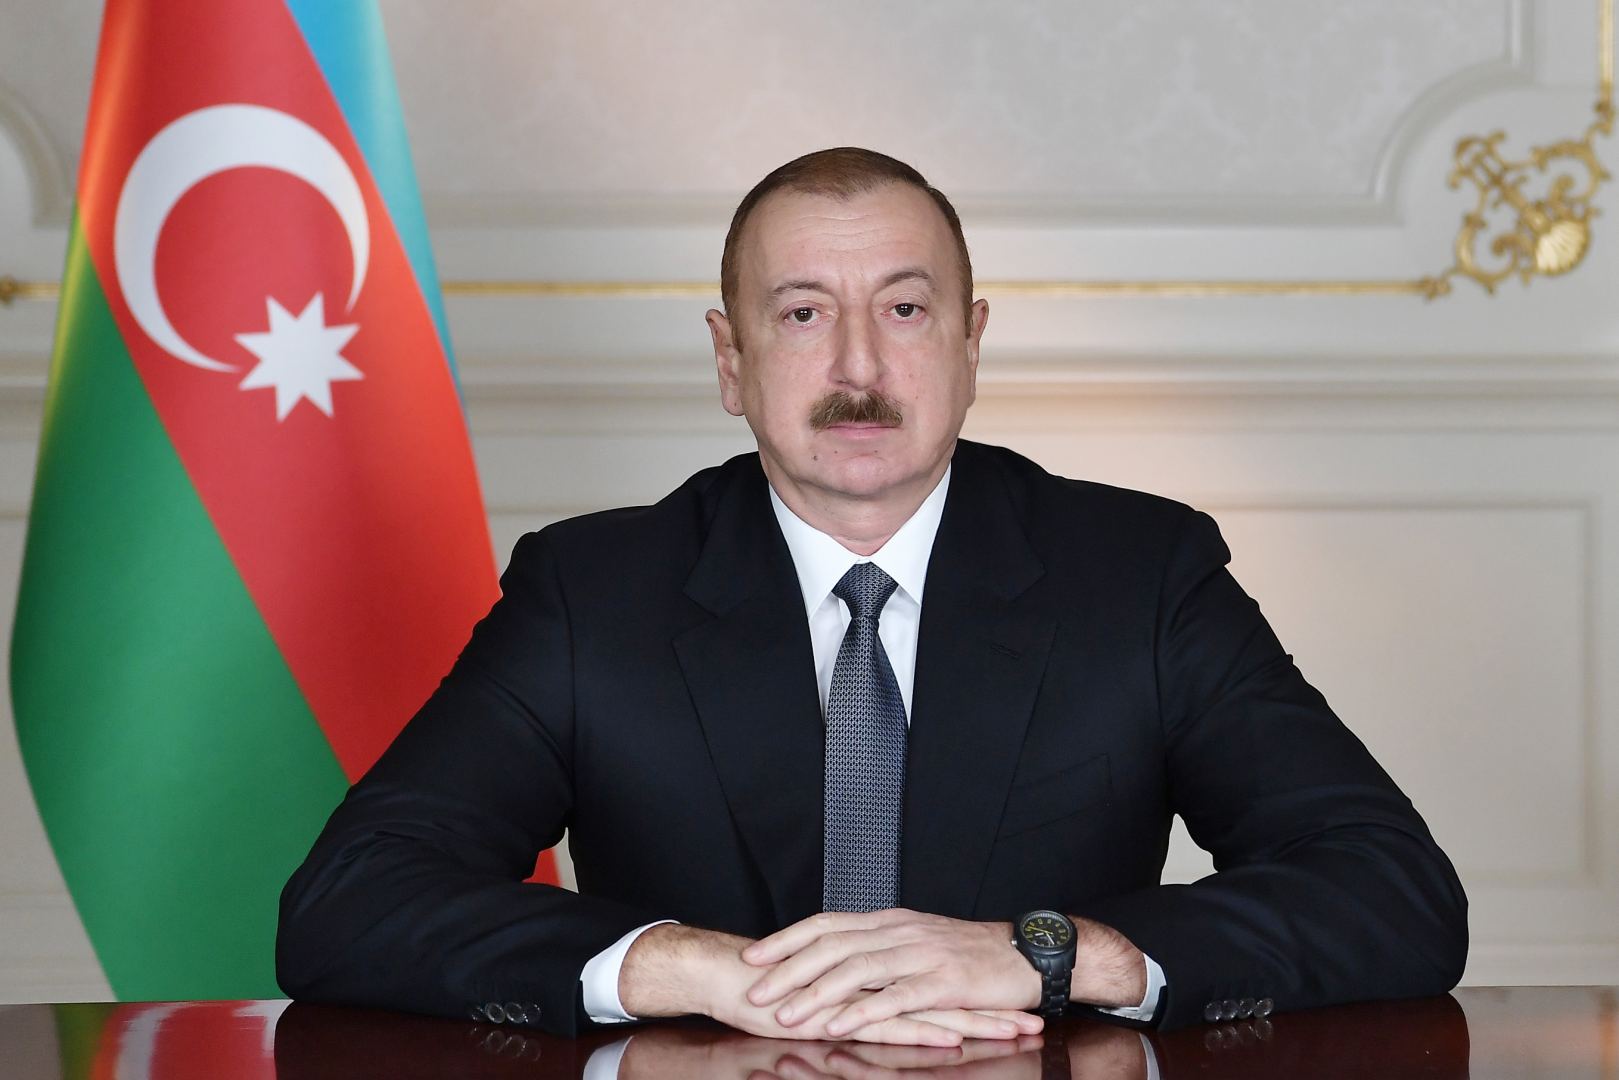 Ильхам Алиев сообщил об освобождении еще трех сел в Ходжавенде (Мартуни)